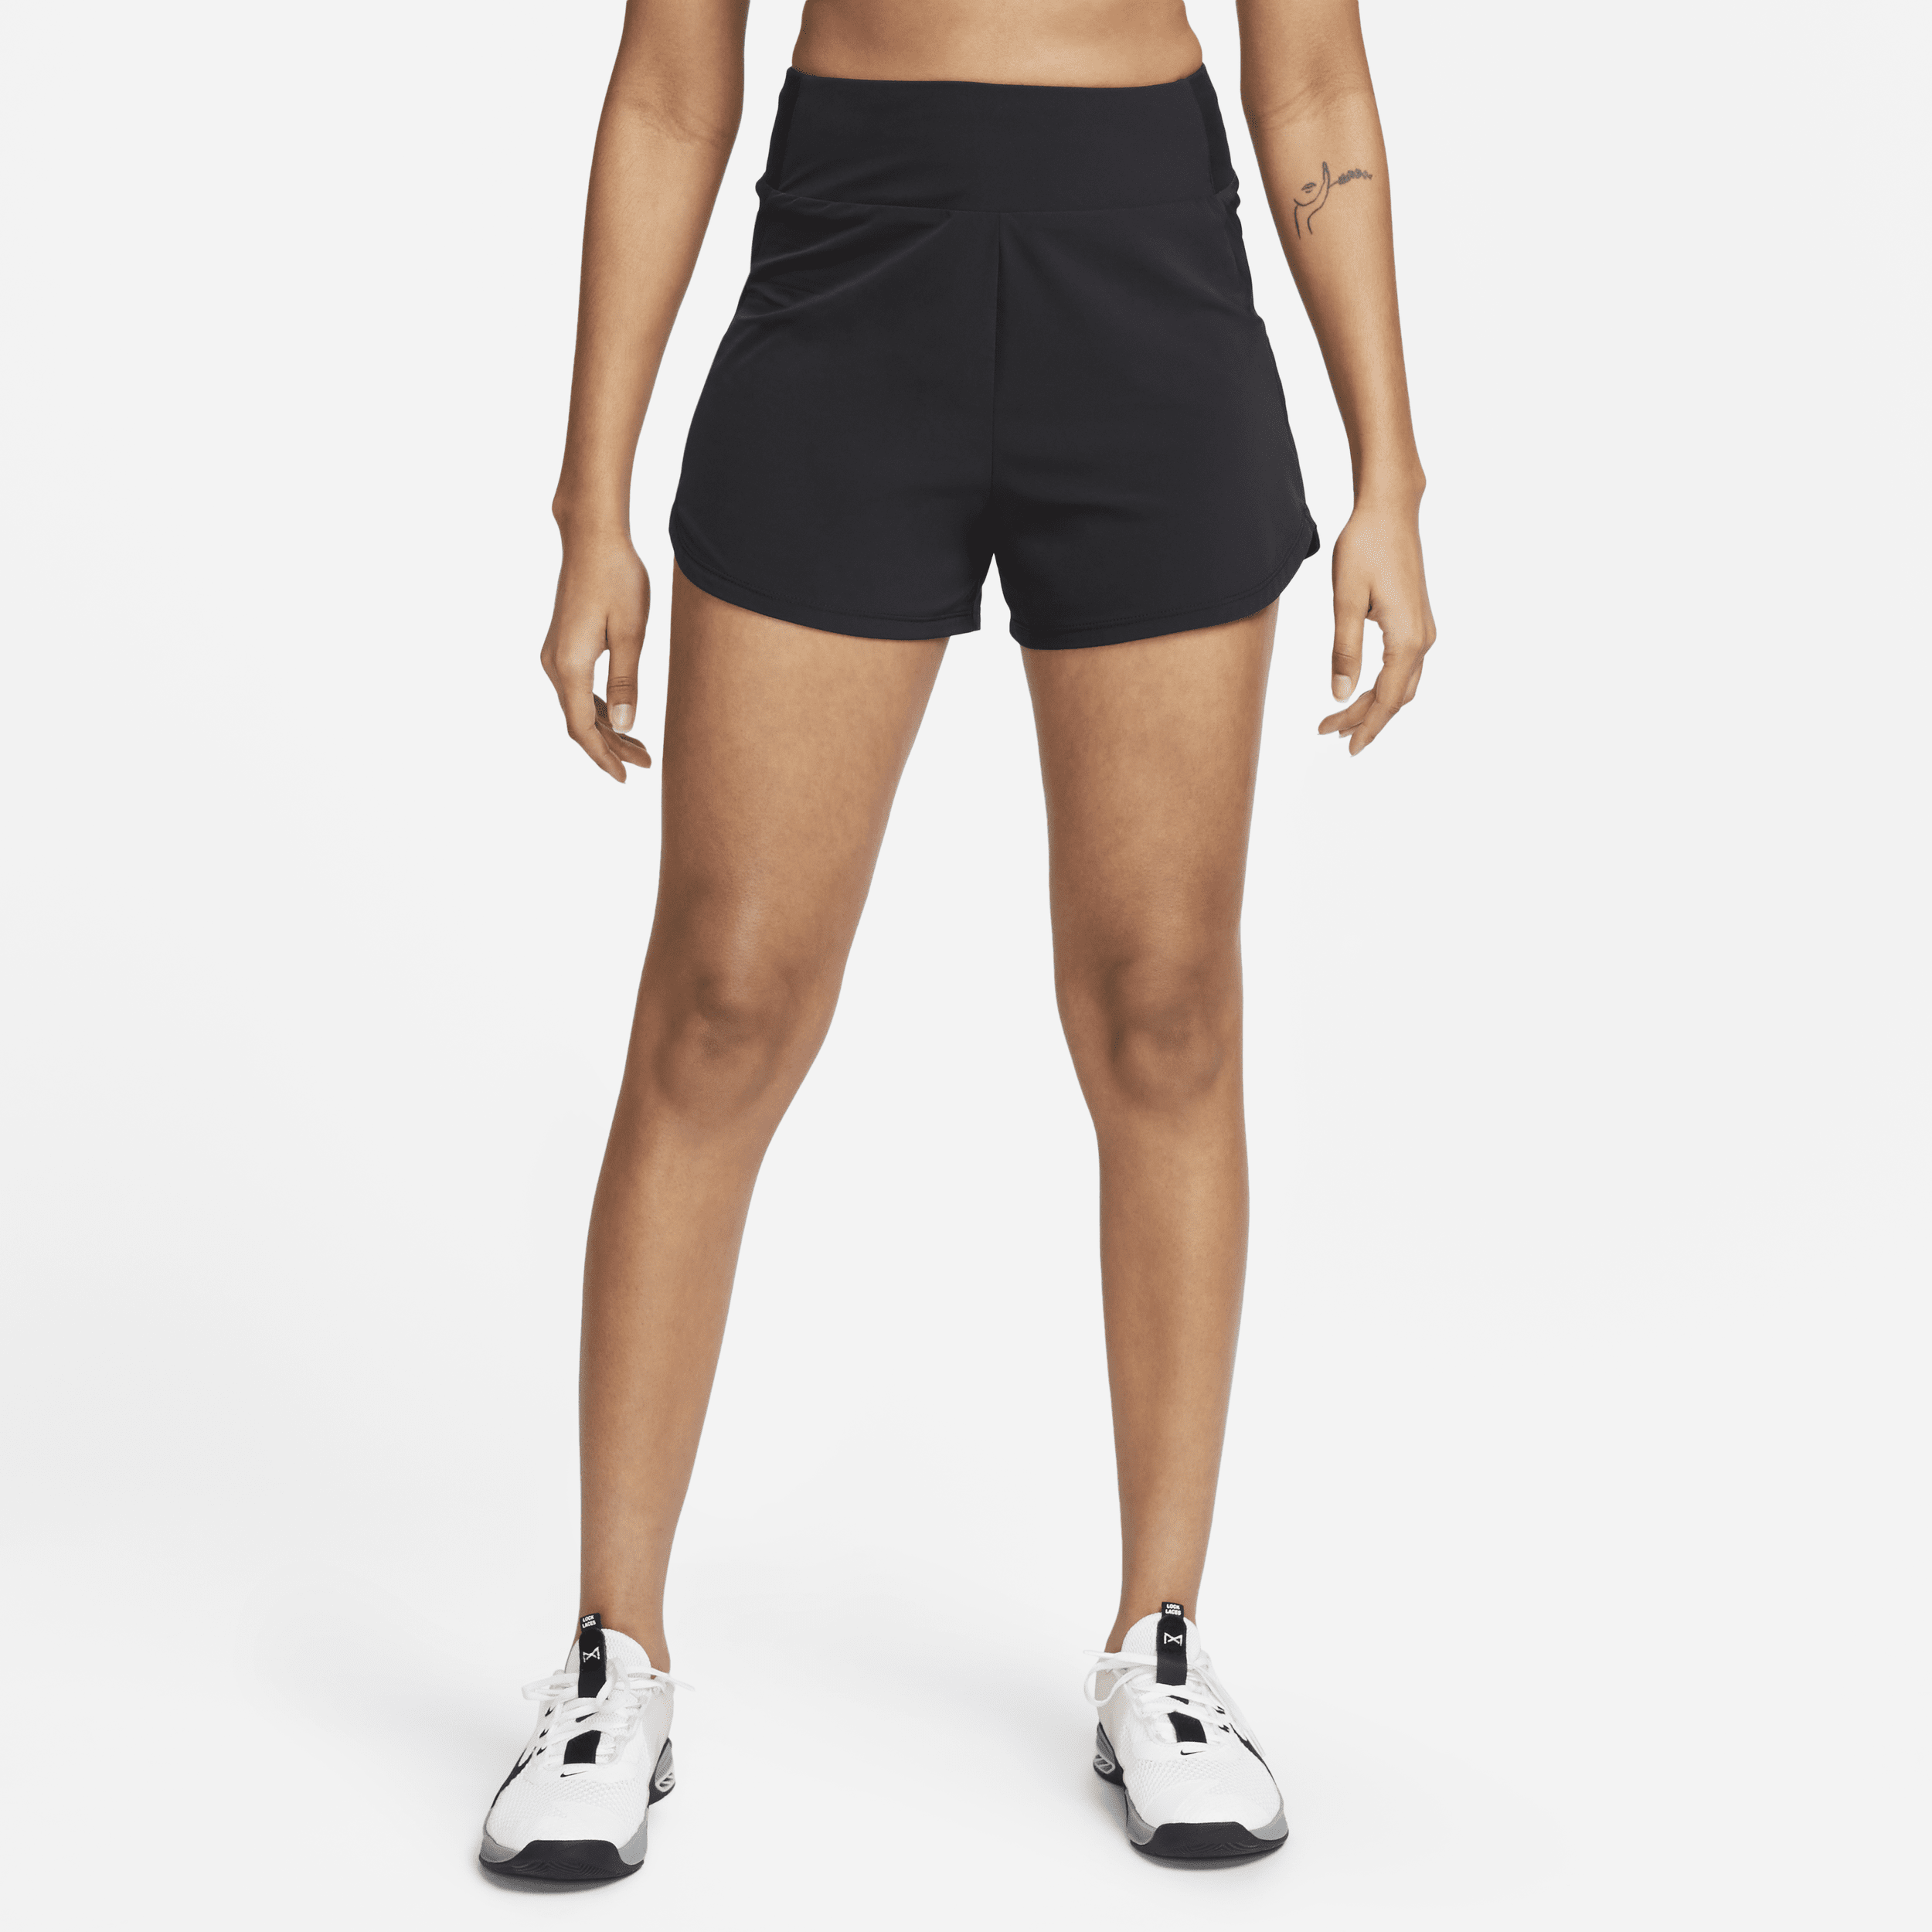 Shorts fitness Dri-FIT a vita alta con slip foderati 8 cm Nike Bliss – Donna - Nero